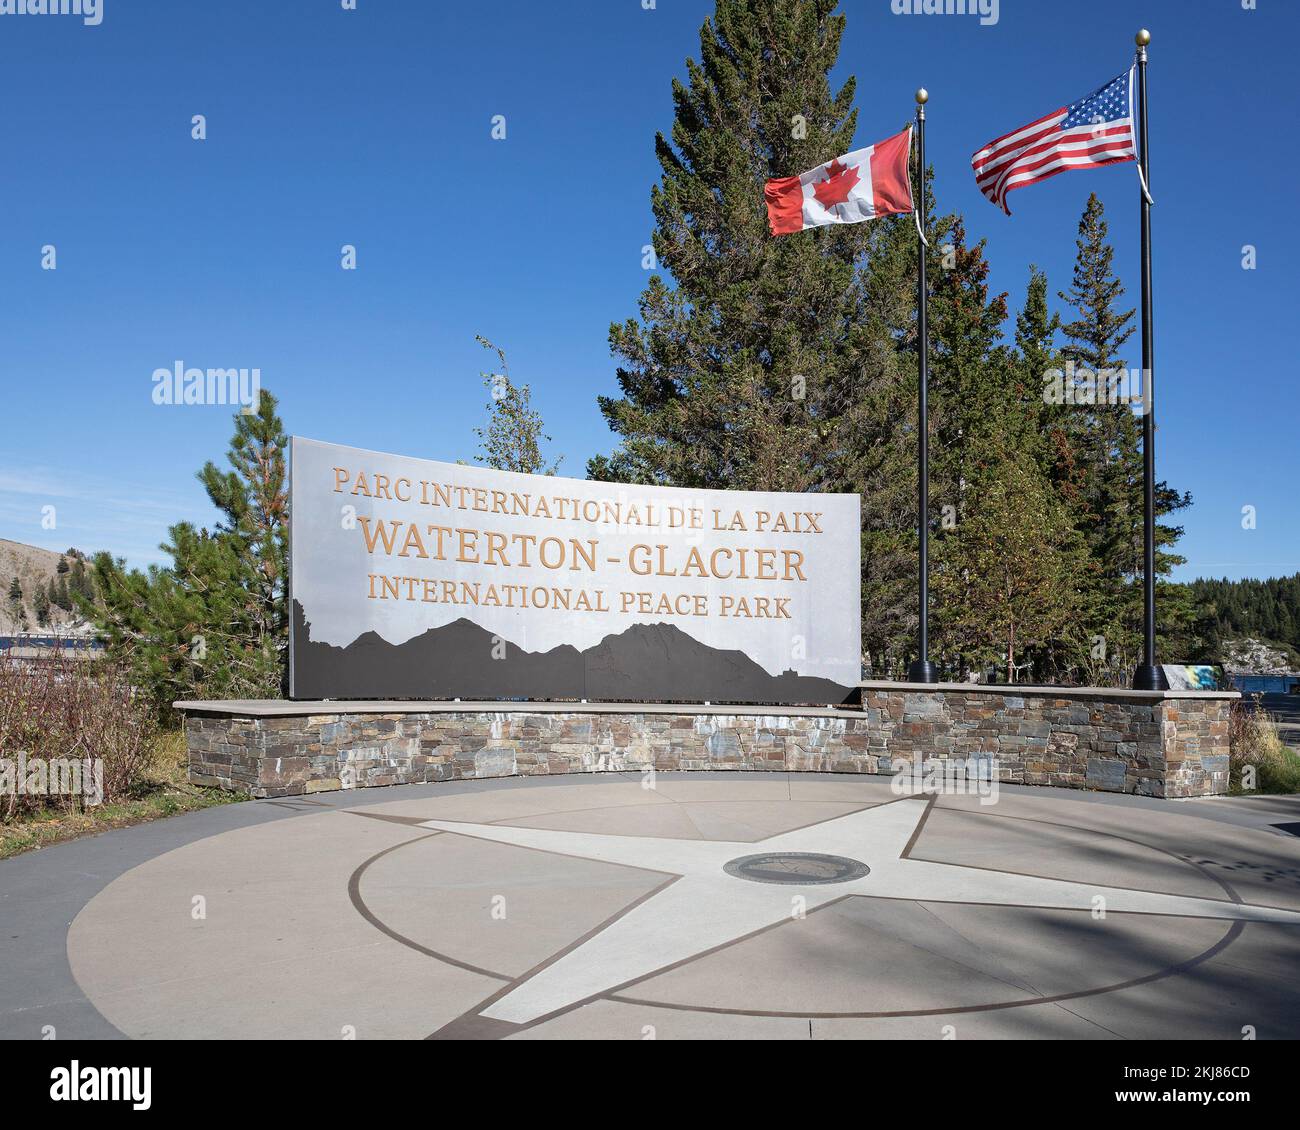 Drapeaux canadiens et américains survolant la place du parc international de la paix Waterton-Glacier, en Alberta, au Canada. Le premier parc international de la paix au monde Banque D'Images